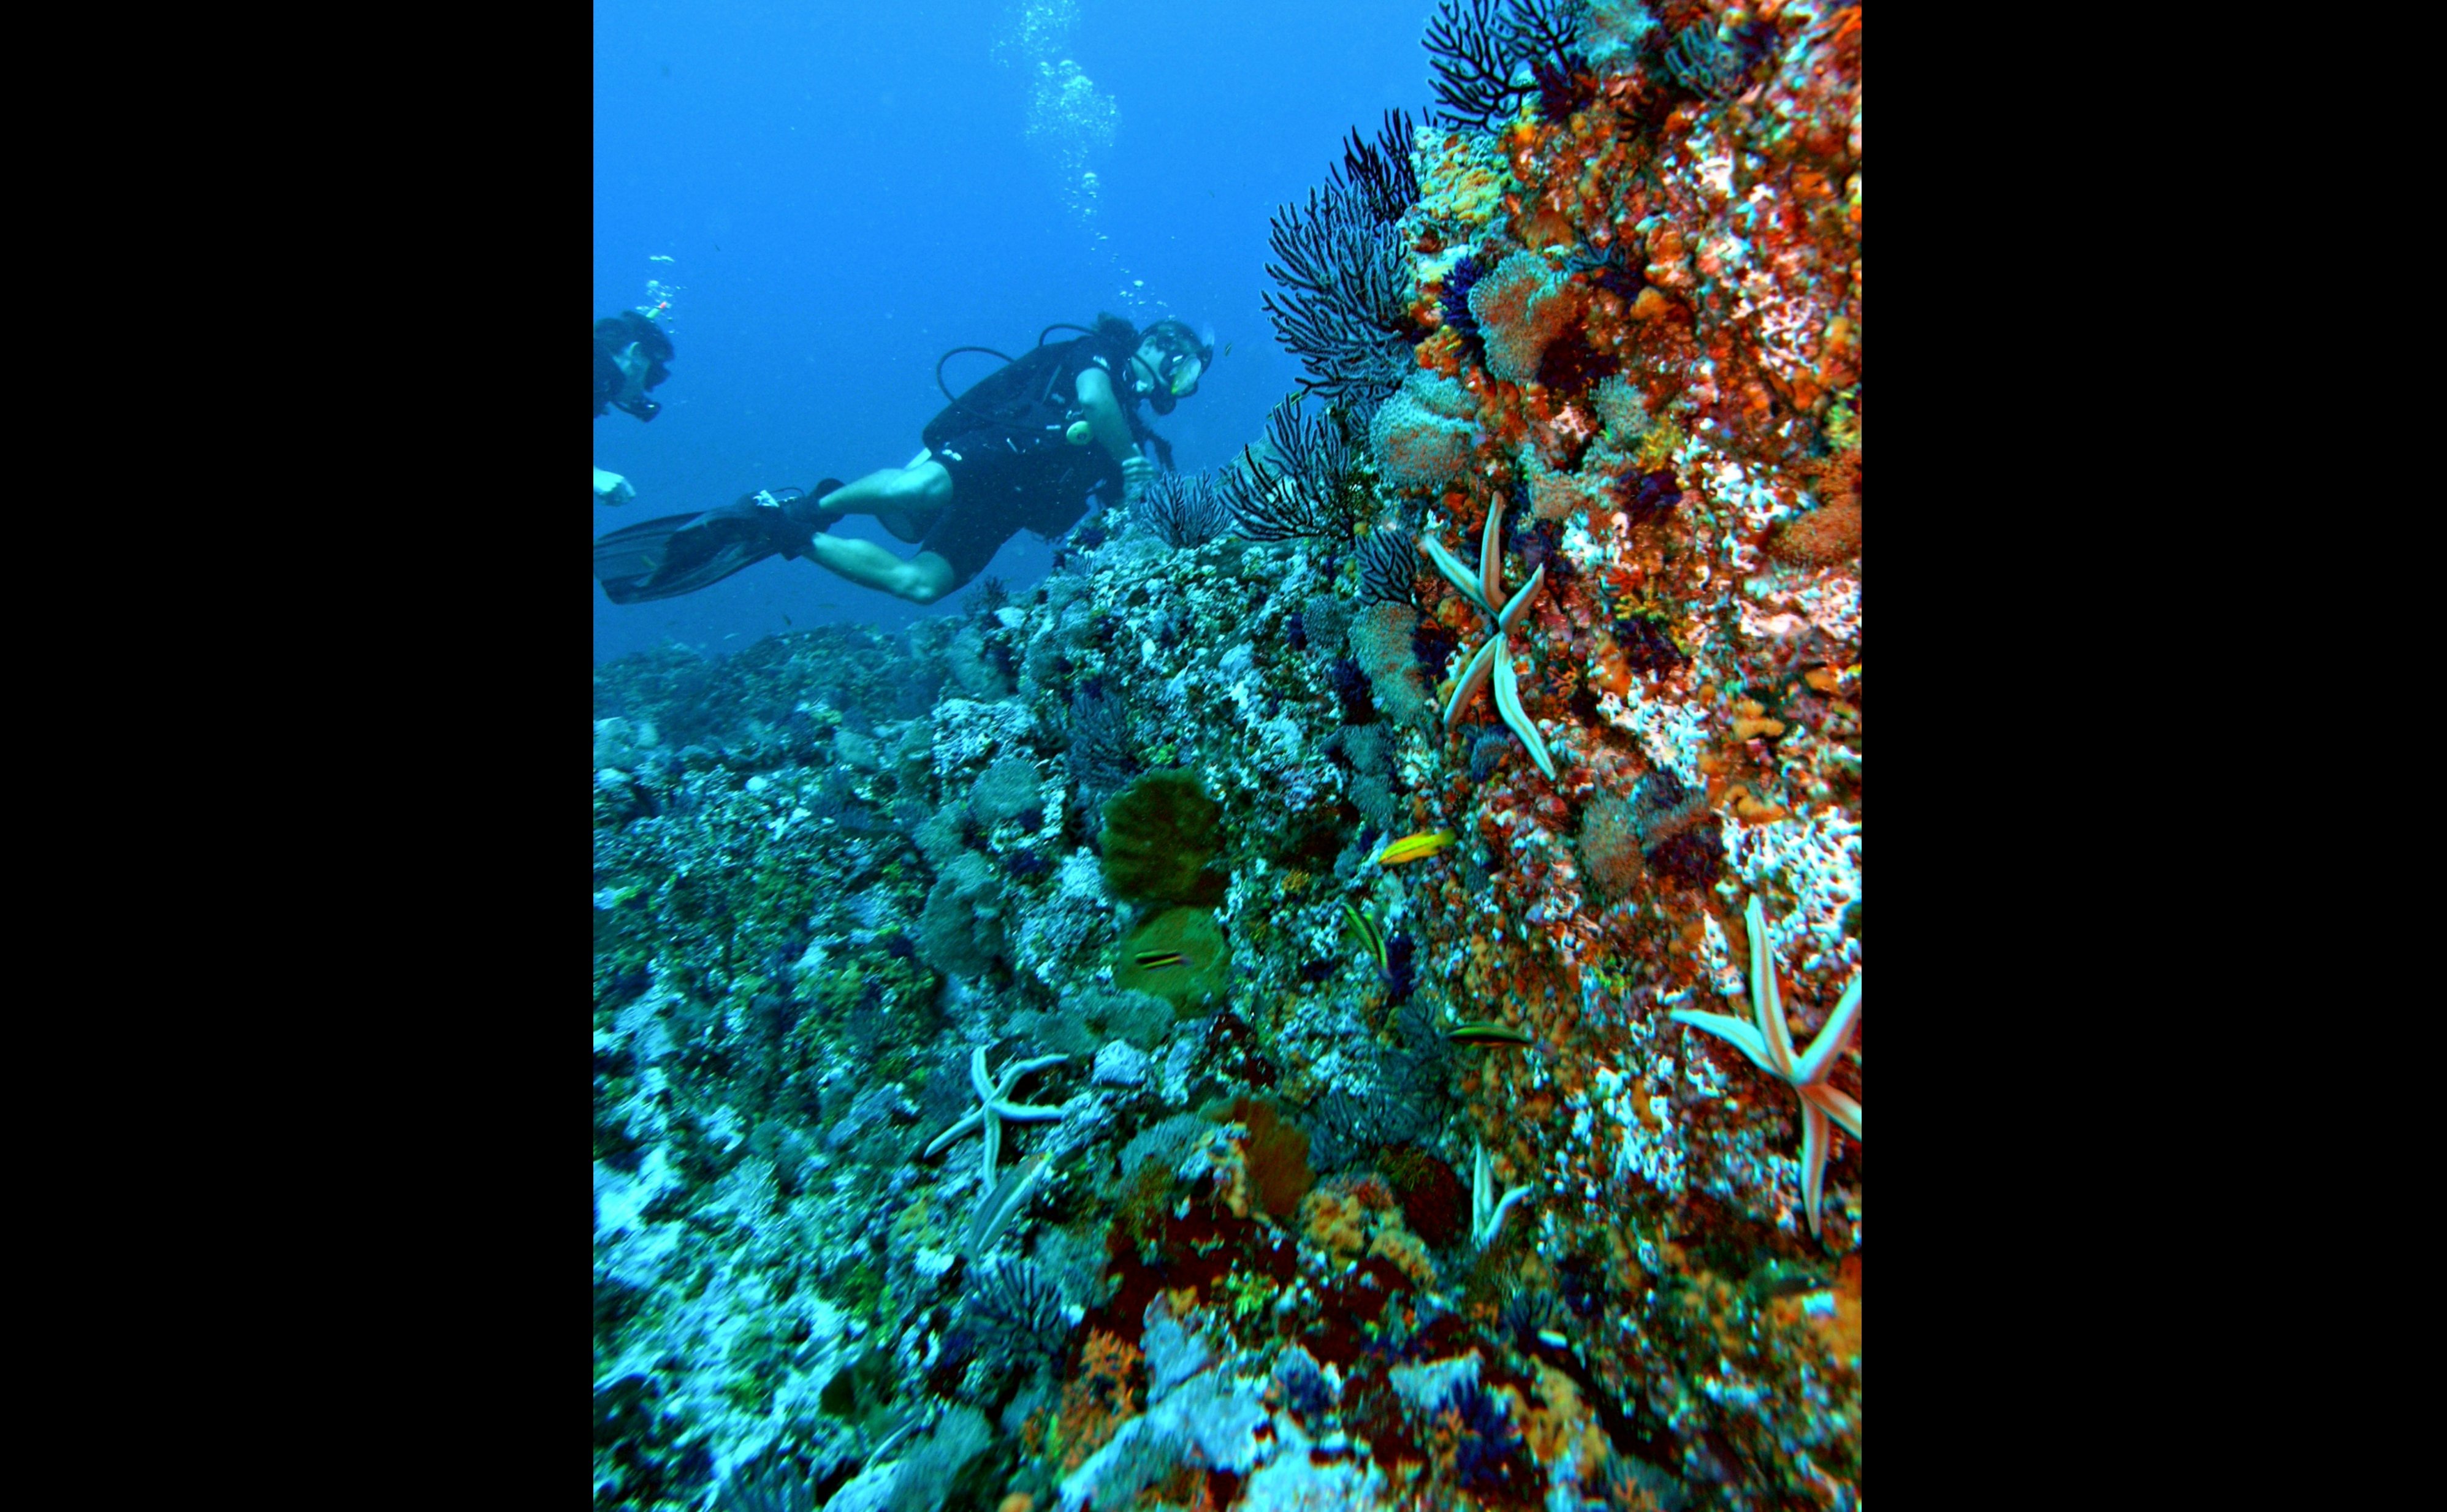 An&eacute;monas rosadas, peque&ntilde;os corales abanico de colores vibrantes, peces loro y mantarrayas es lo que esconden sus profundidades. (Foto: OVC Riviera Nayarit)